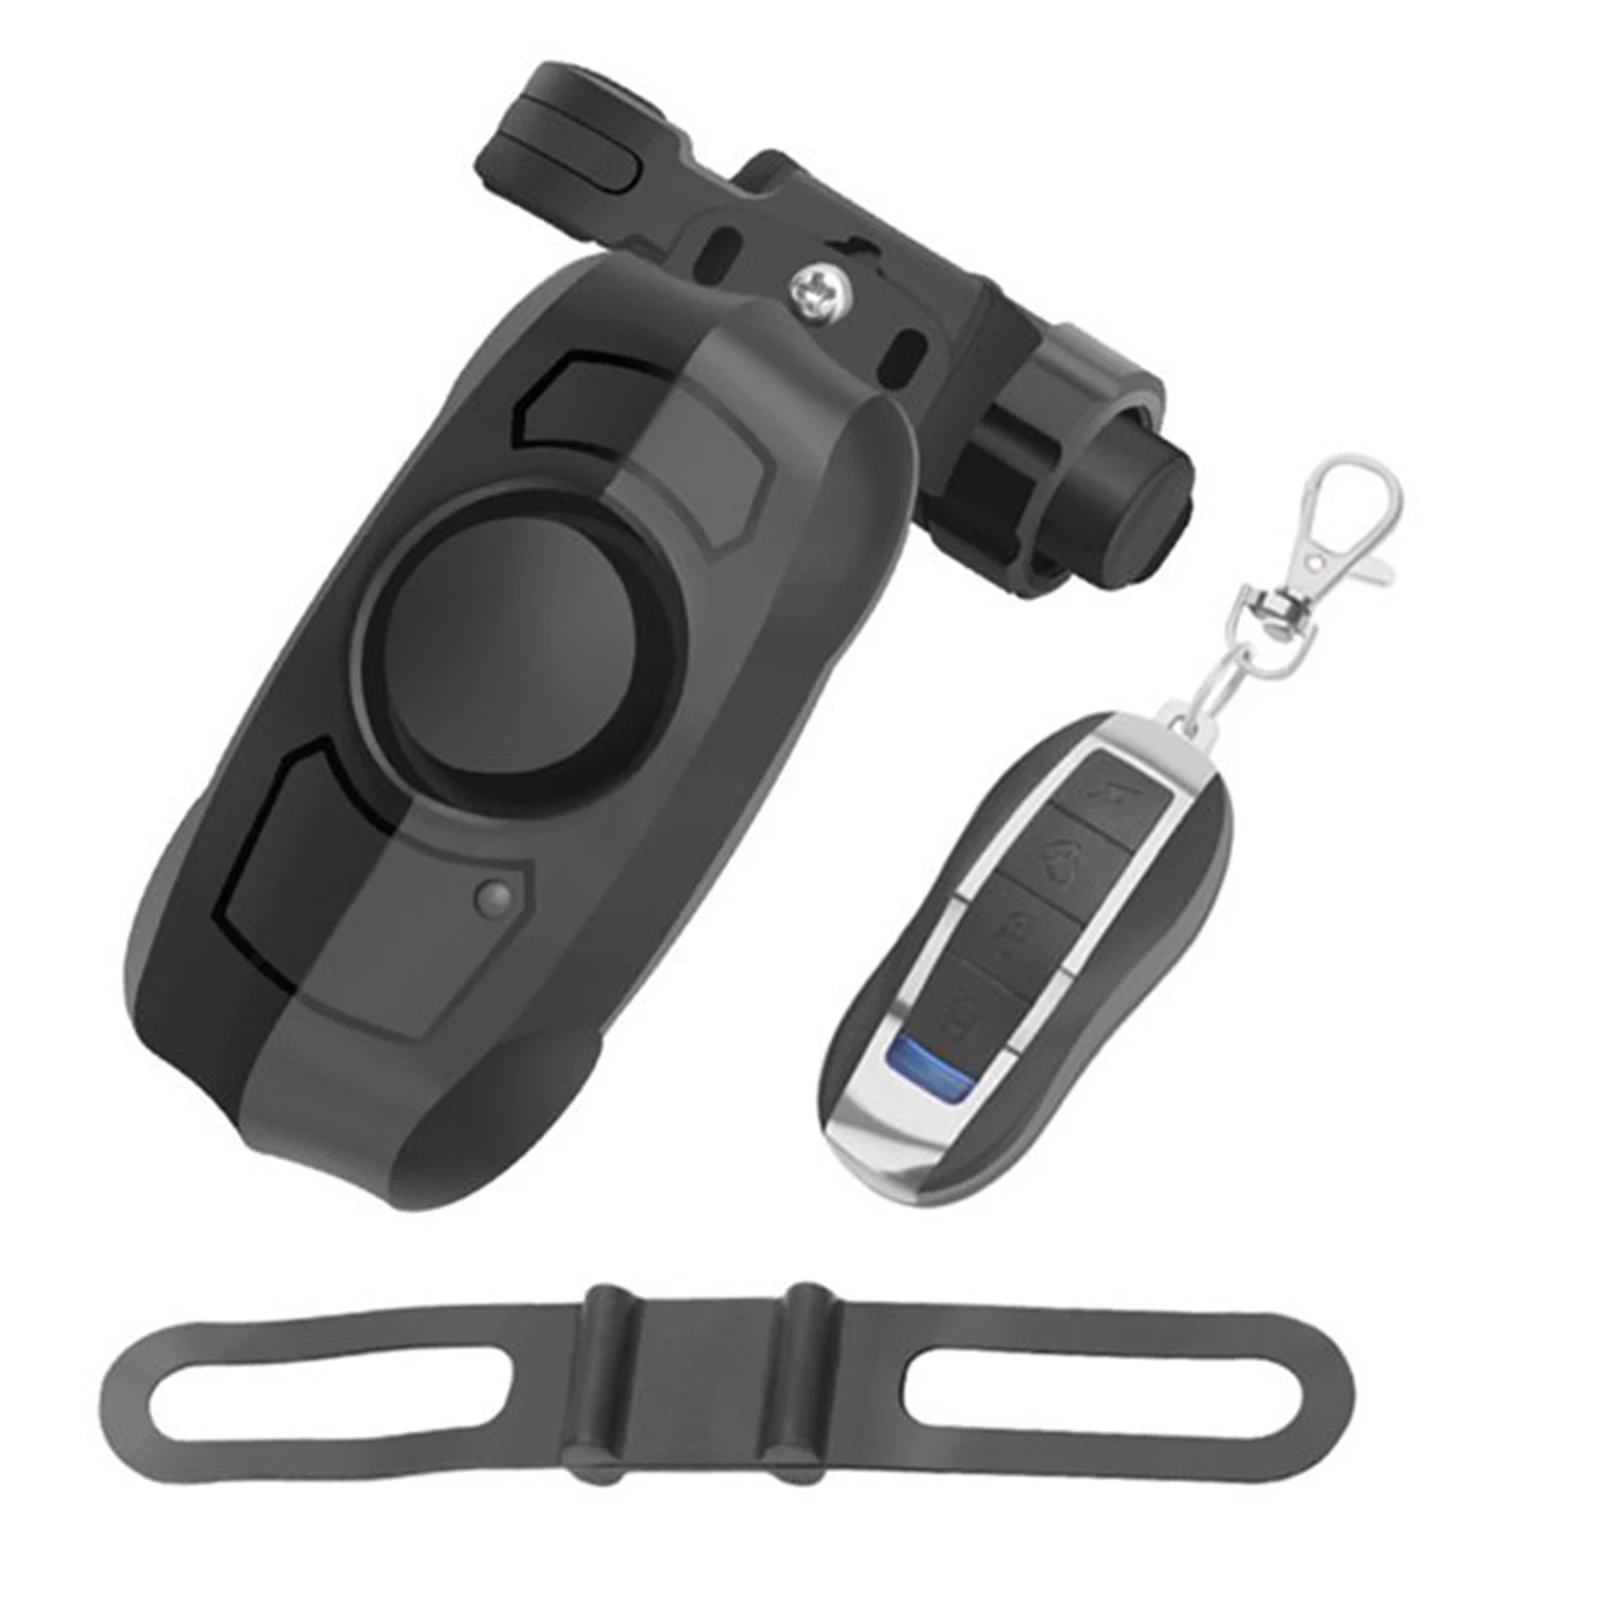 Регулируемая зарядка через USB Многофункциональный замок безопасности Основание крепления Велосипедная охранная сигнализация Велосипедный гудок Пульт дистанционного управления Беспроводной